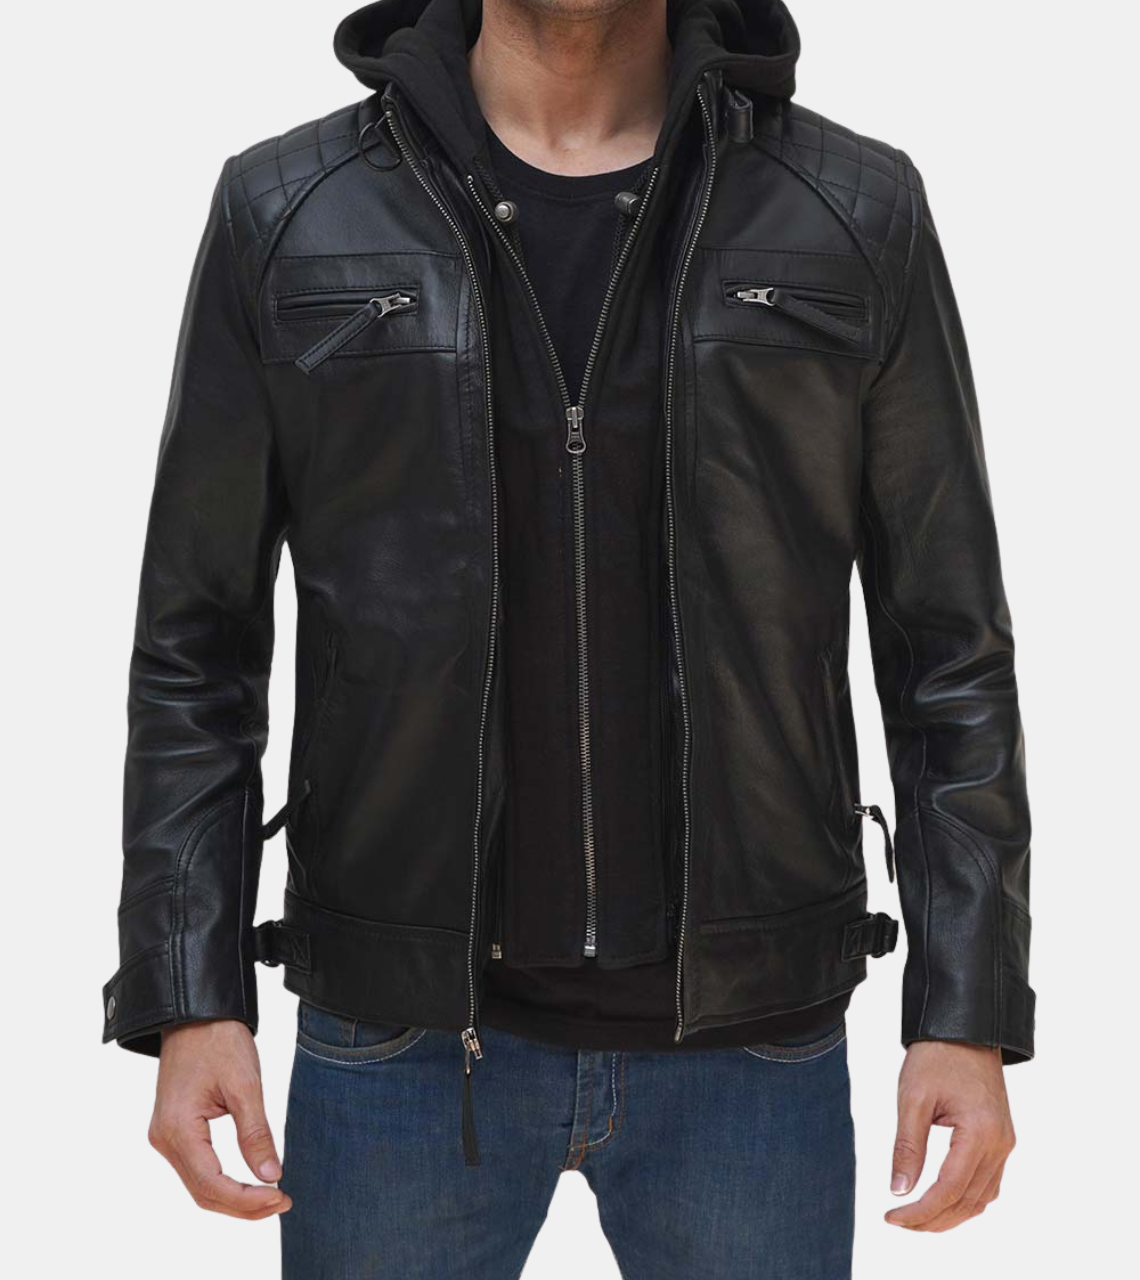 Verben Men's Black Hooded Leather Jacket